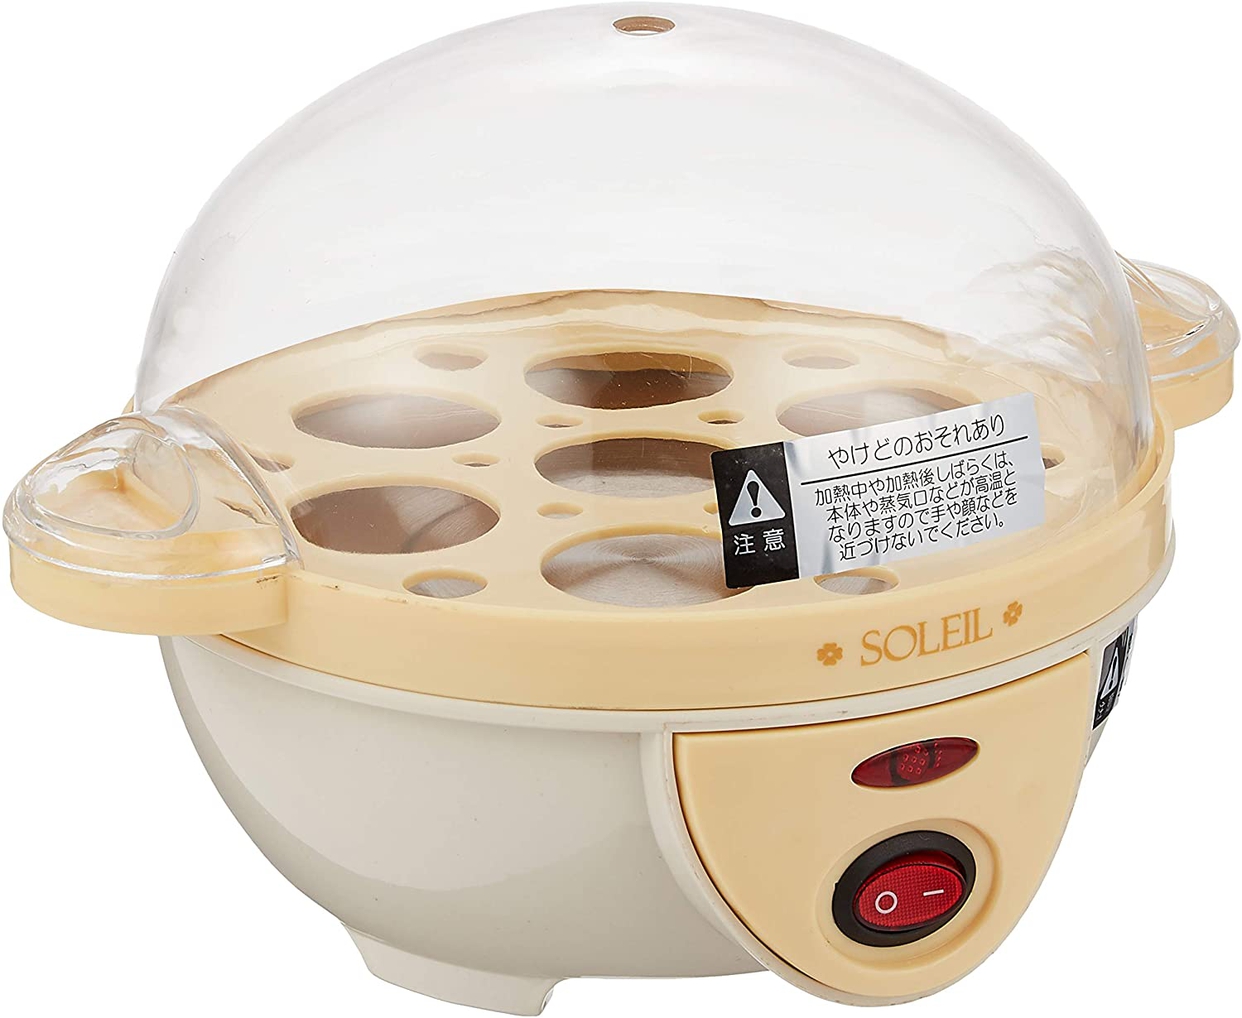 Soleil ソレイユ 電気たまご湯で器 Sl 25の口コミ 評判一覧 1件のたまご調理器レビュー モノシル